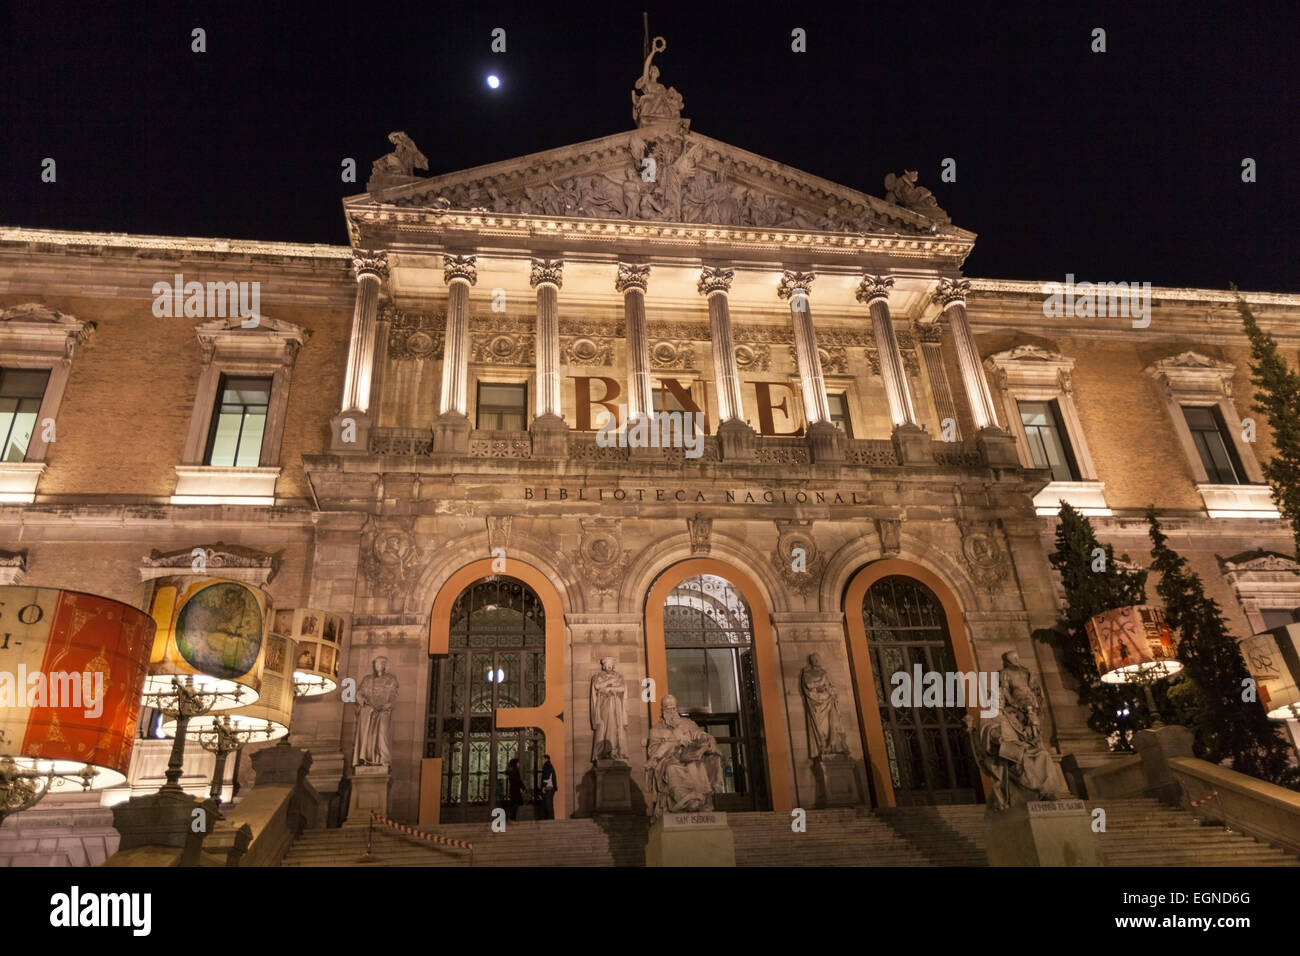 Las escaleras y la entrada principal con monumentos de la Biblioteca Nacional de España (Biblioteca Nacional de España) por la noche. Foto de stock